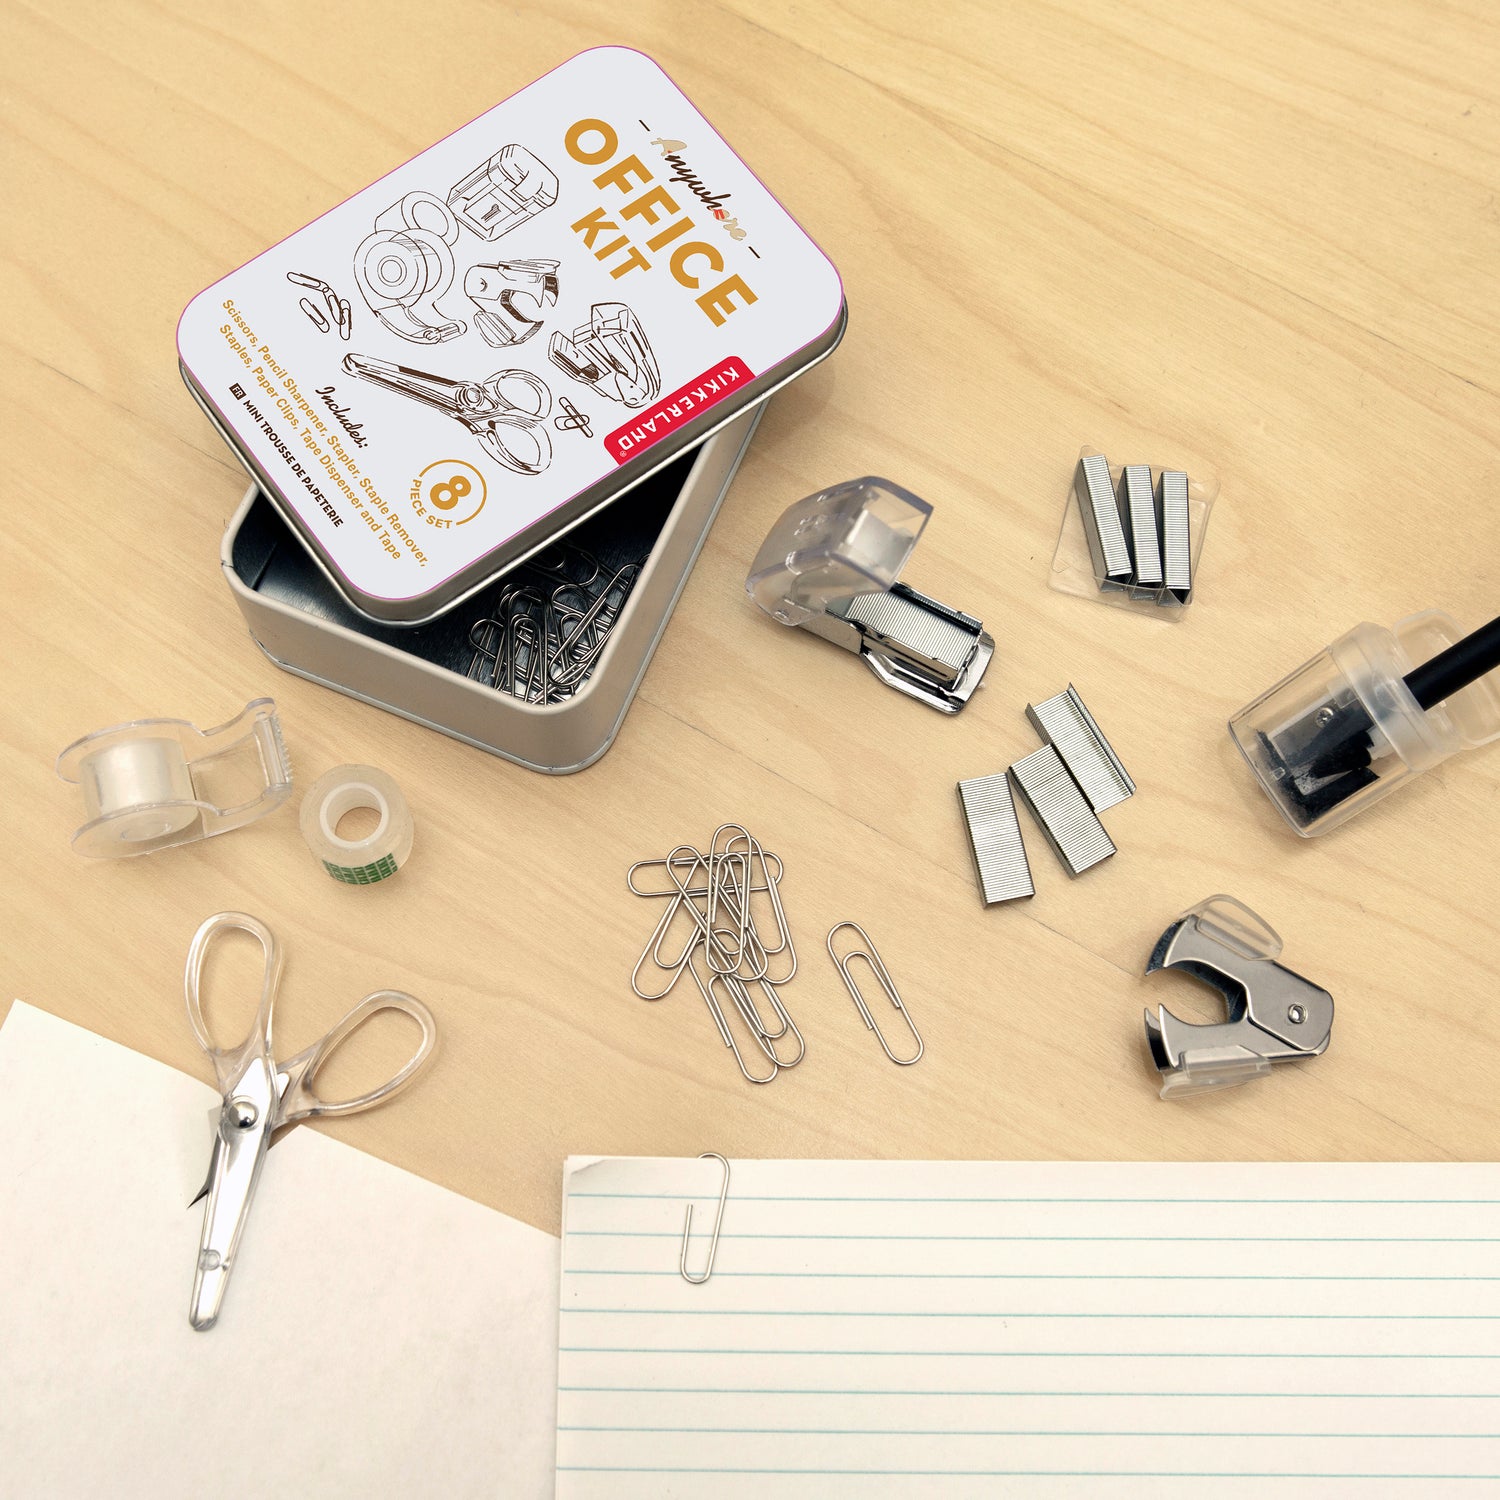 Mini Tape Gun – Kikkerland Design Inc